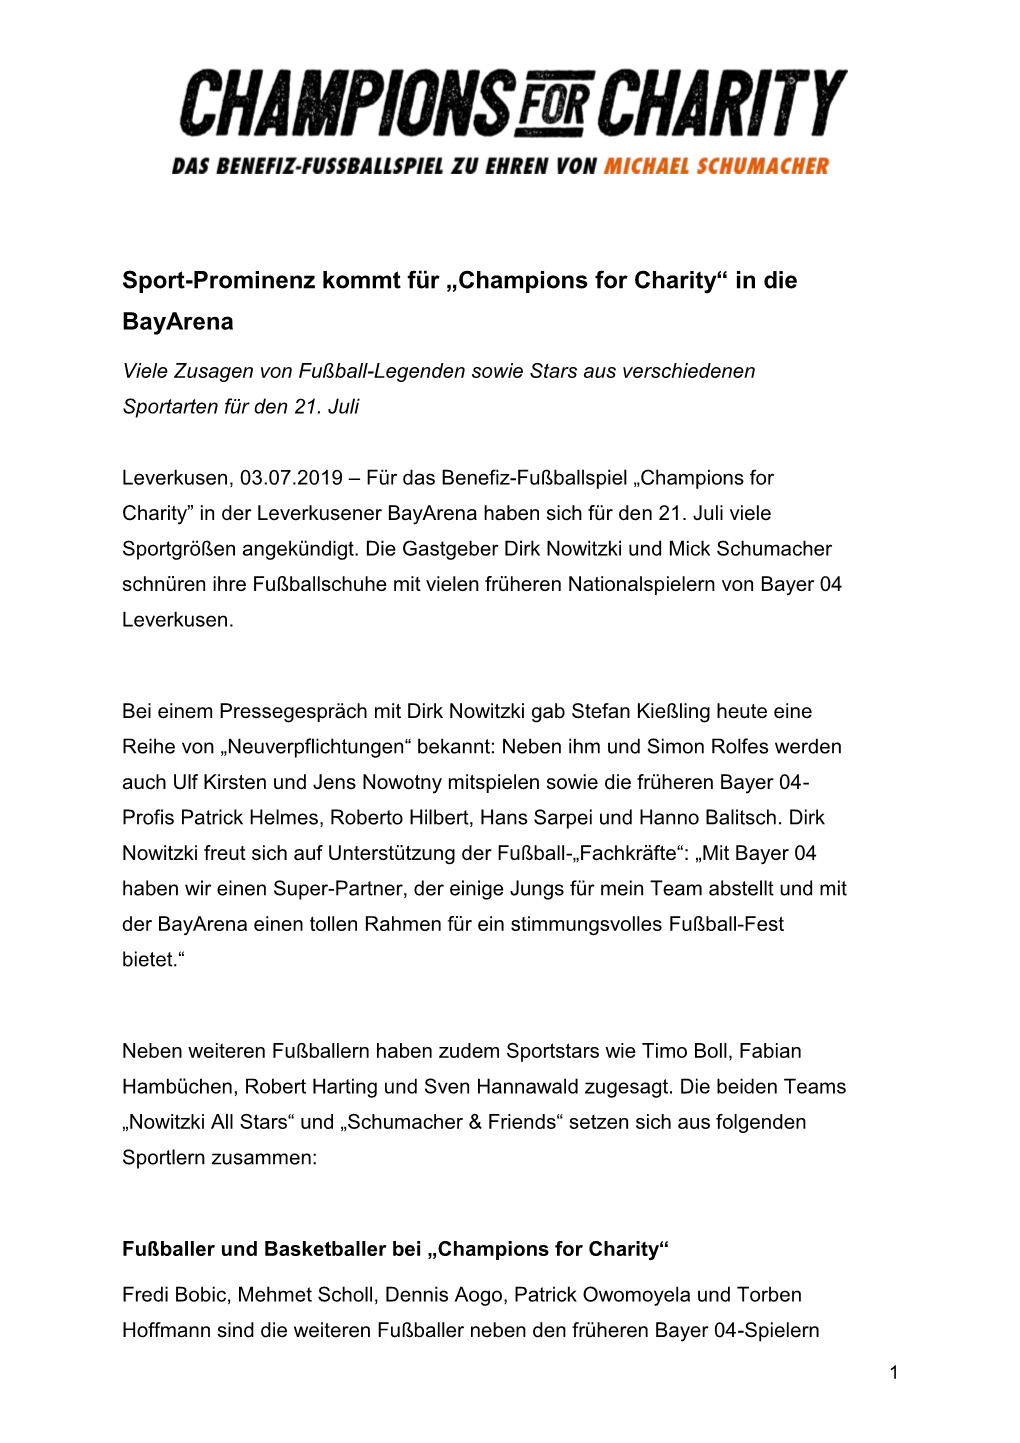 Sport-Prominenz Kommt Für „Champions for Charity“ in Die Bayarena